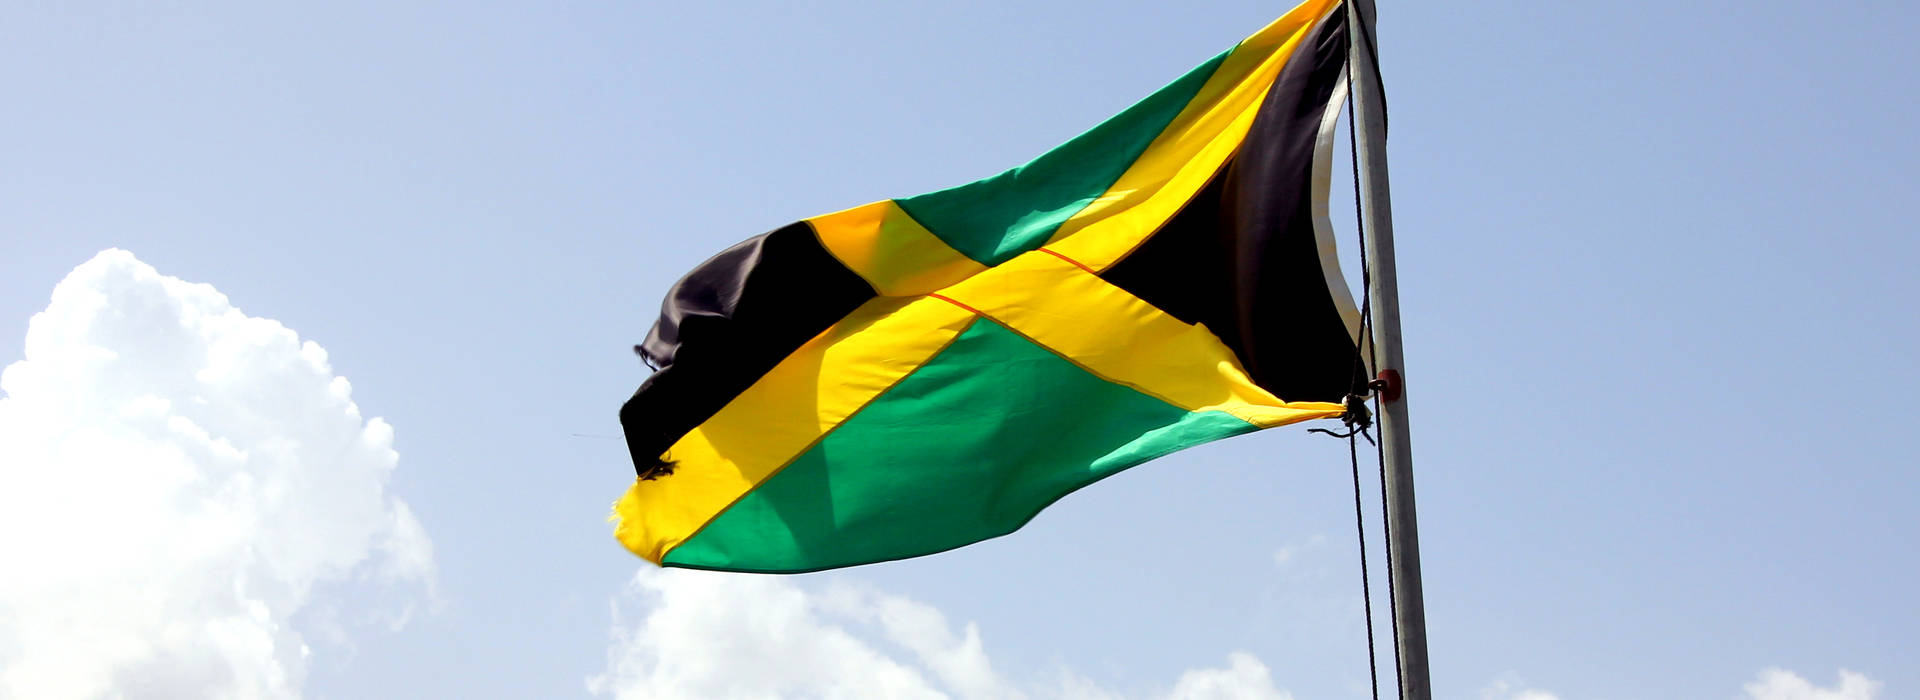 Schwenkendeflagge Von Jamaika Wallpaper